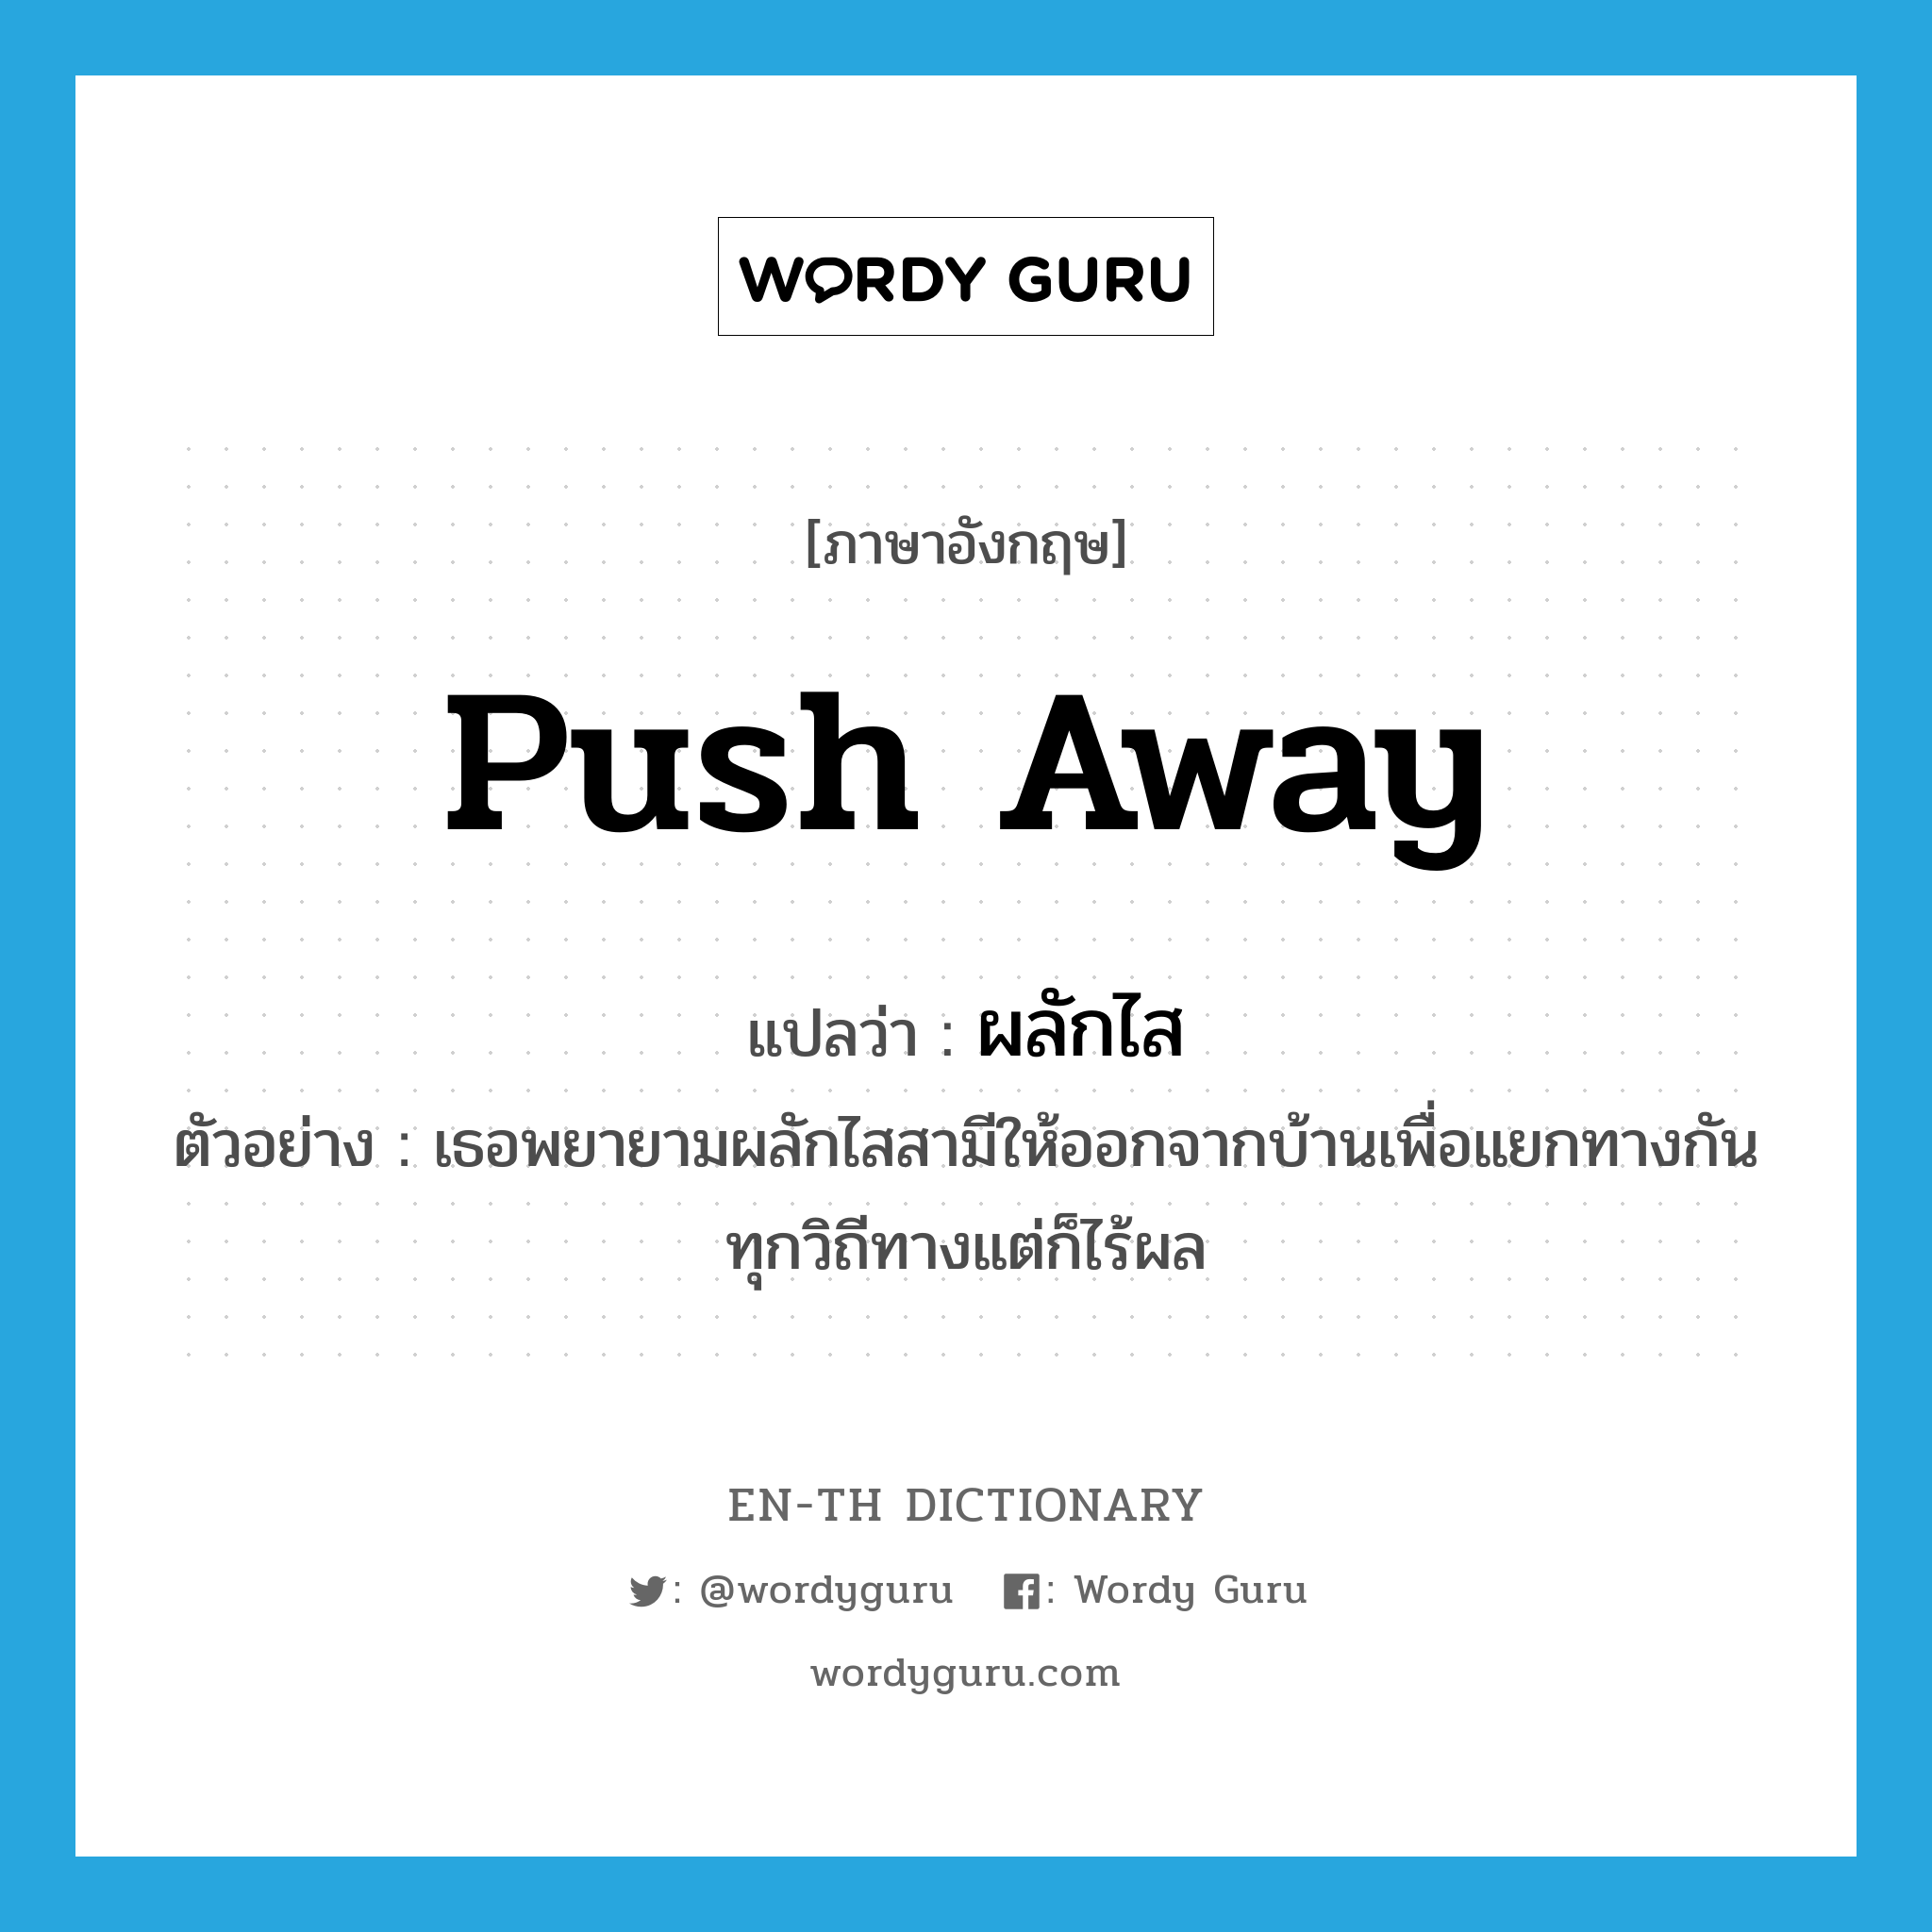 push away แปลว่า?, คำศัพท์ภาษาอังกฤษ push away แปลว่า ผลักไส ประเภท V ตัวอย่าง เธอพยายามผลักไสสามีให้ออกจากบ้านเพื่อแยกทางกันทุกวิถีทางแต่ก็ไร้ผล หมวด V